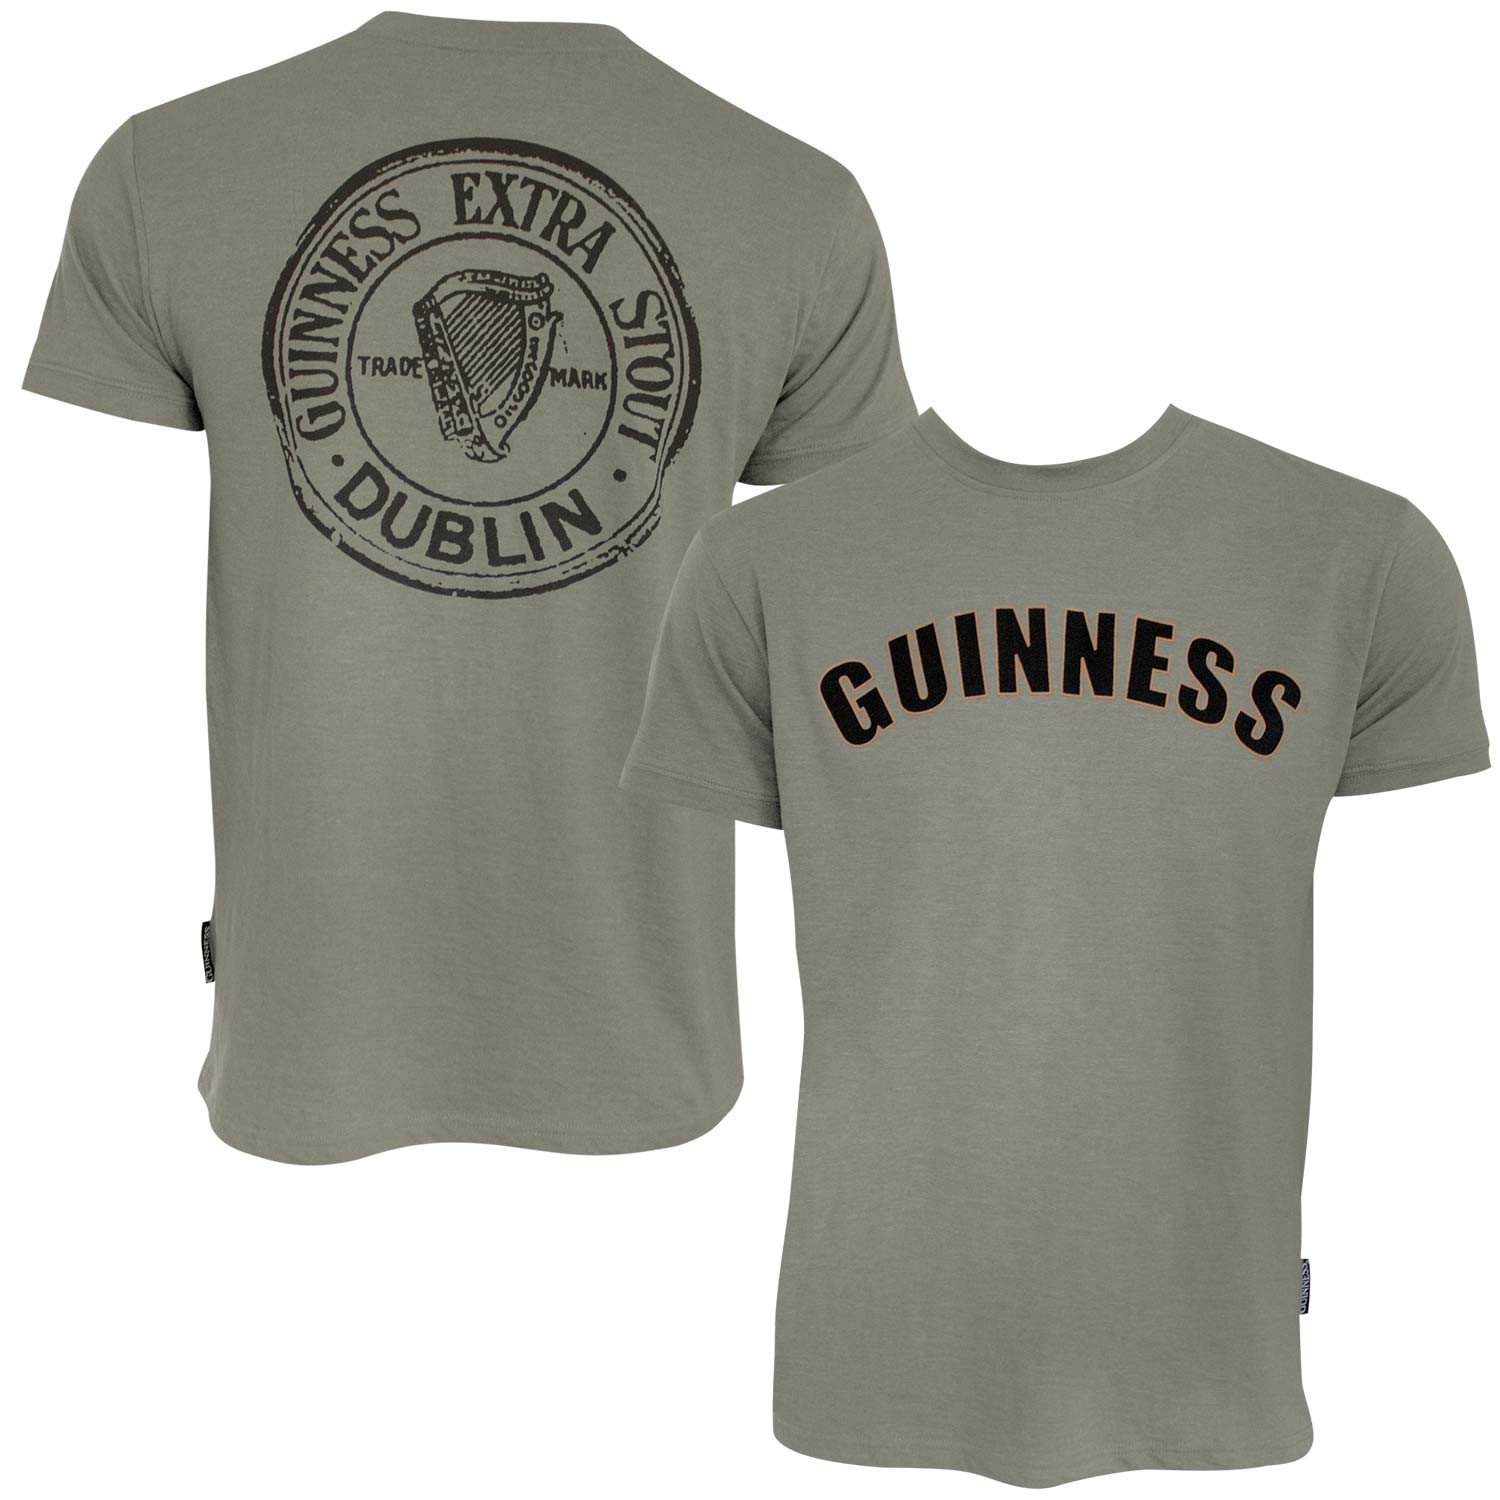 Guinness Bottle Cap Tee Shirt